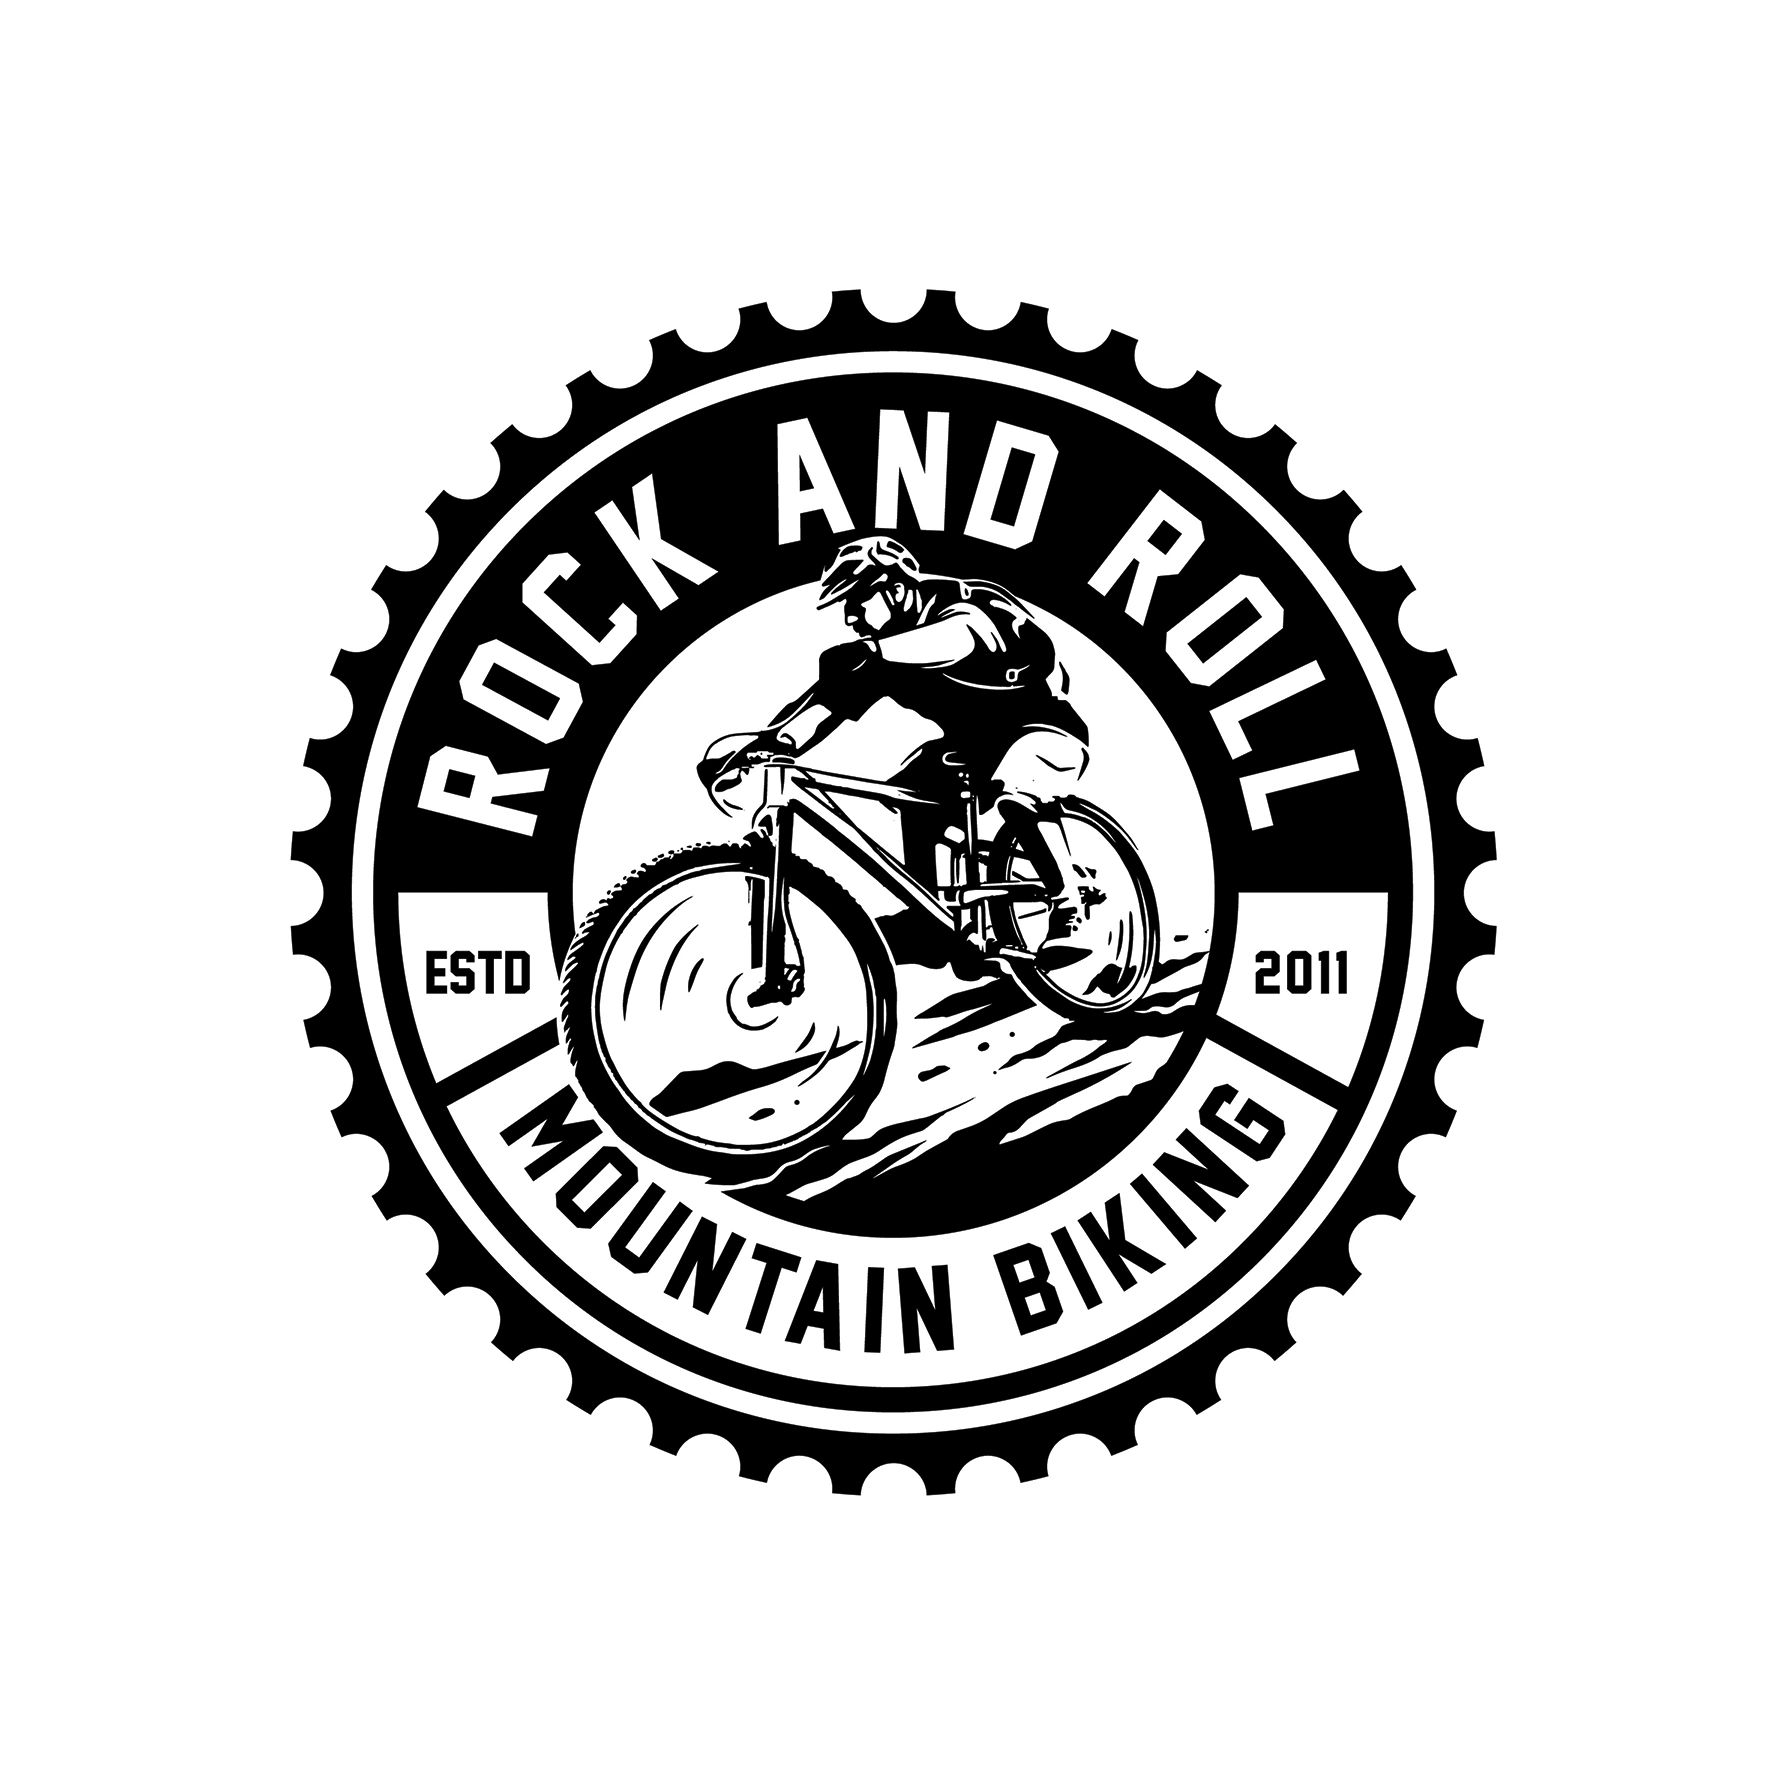 www.rockandrollmountainbiking.com.au